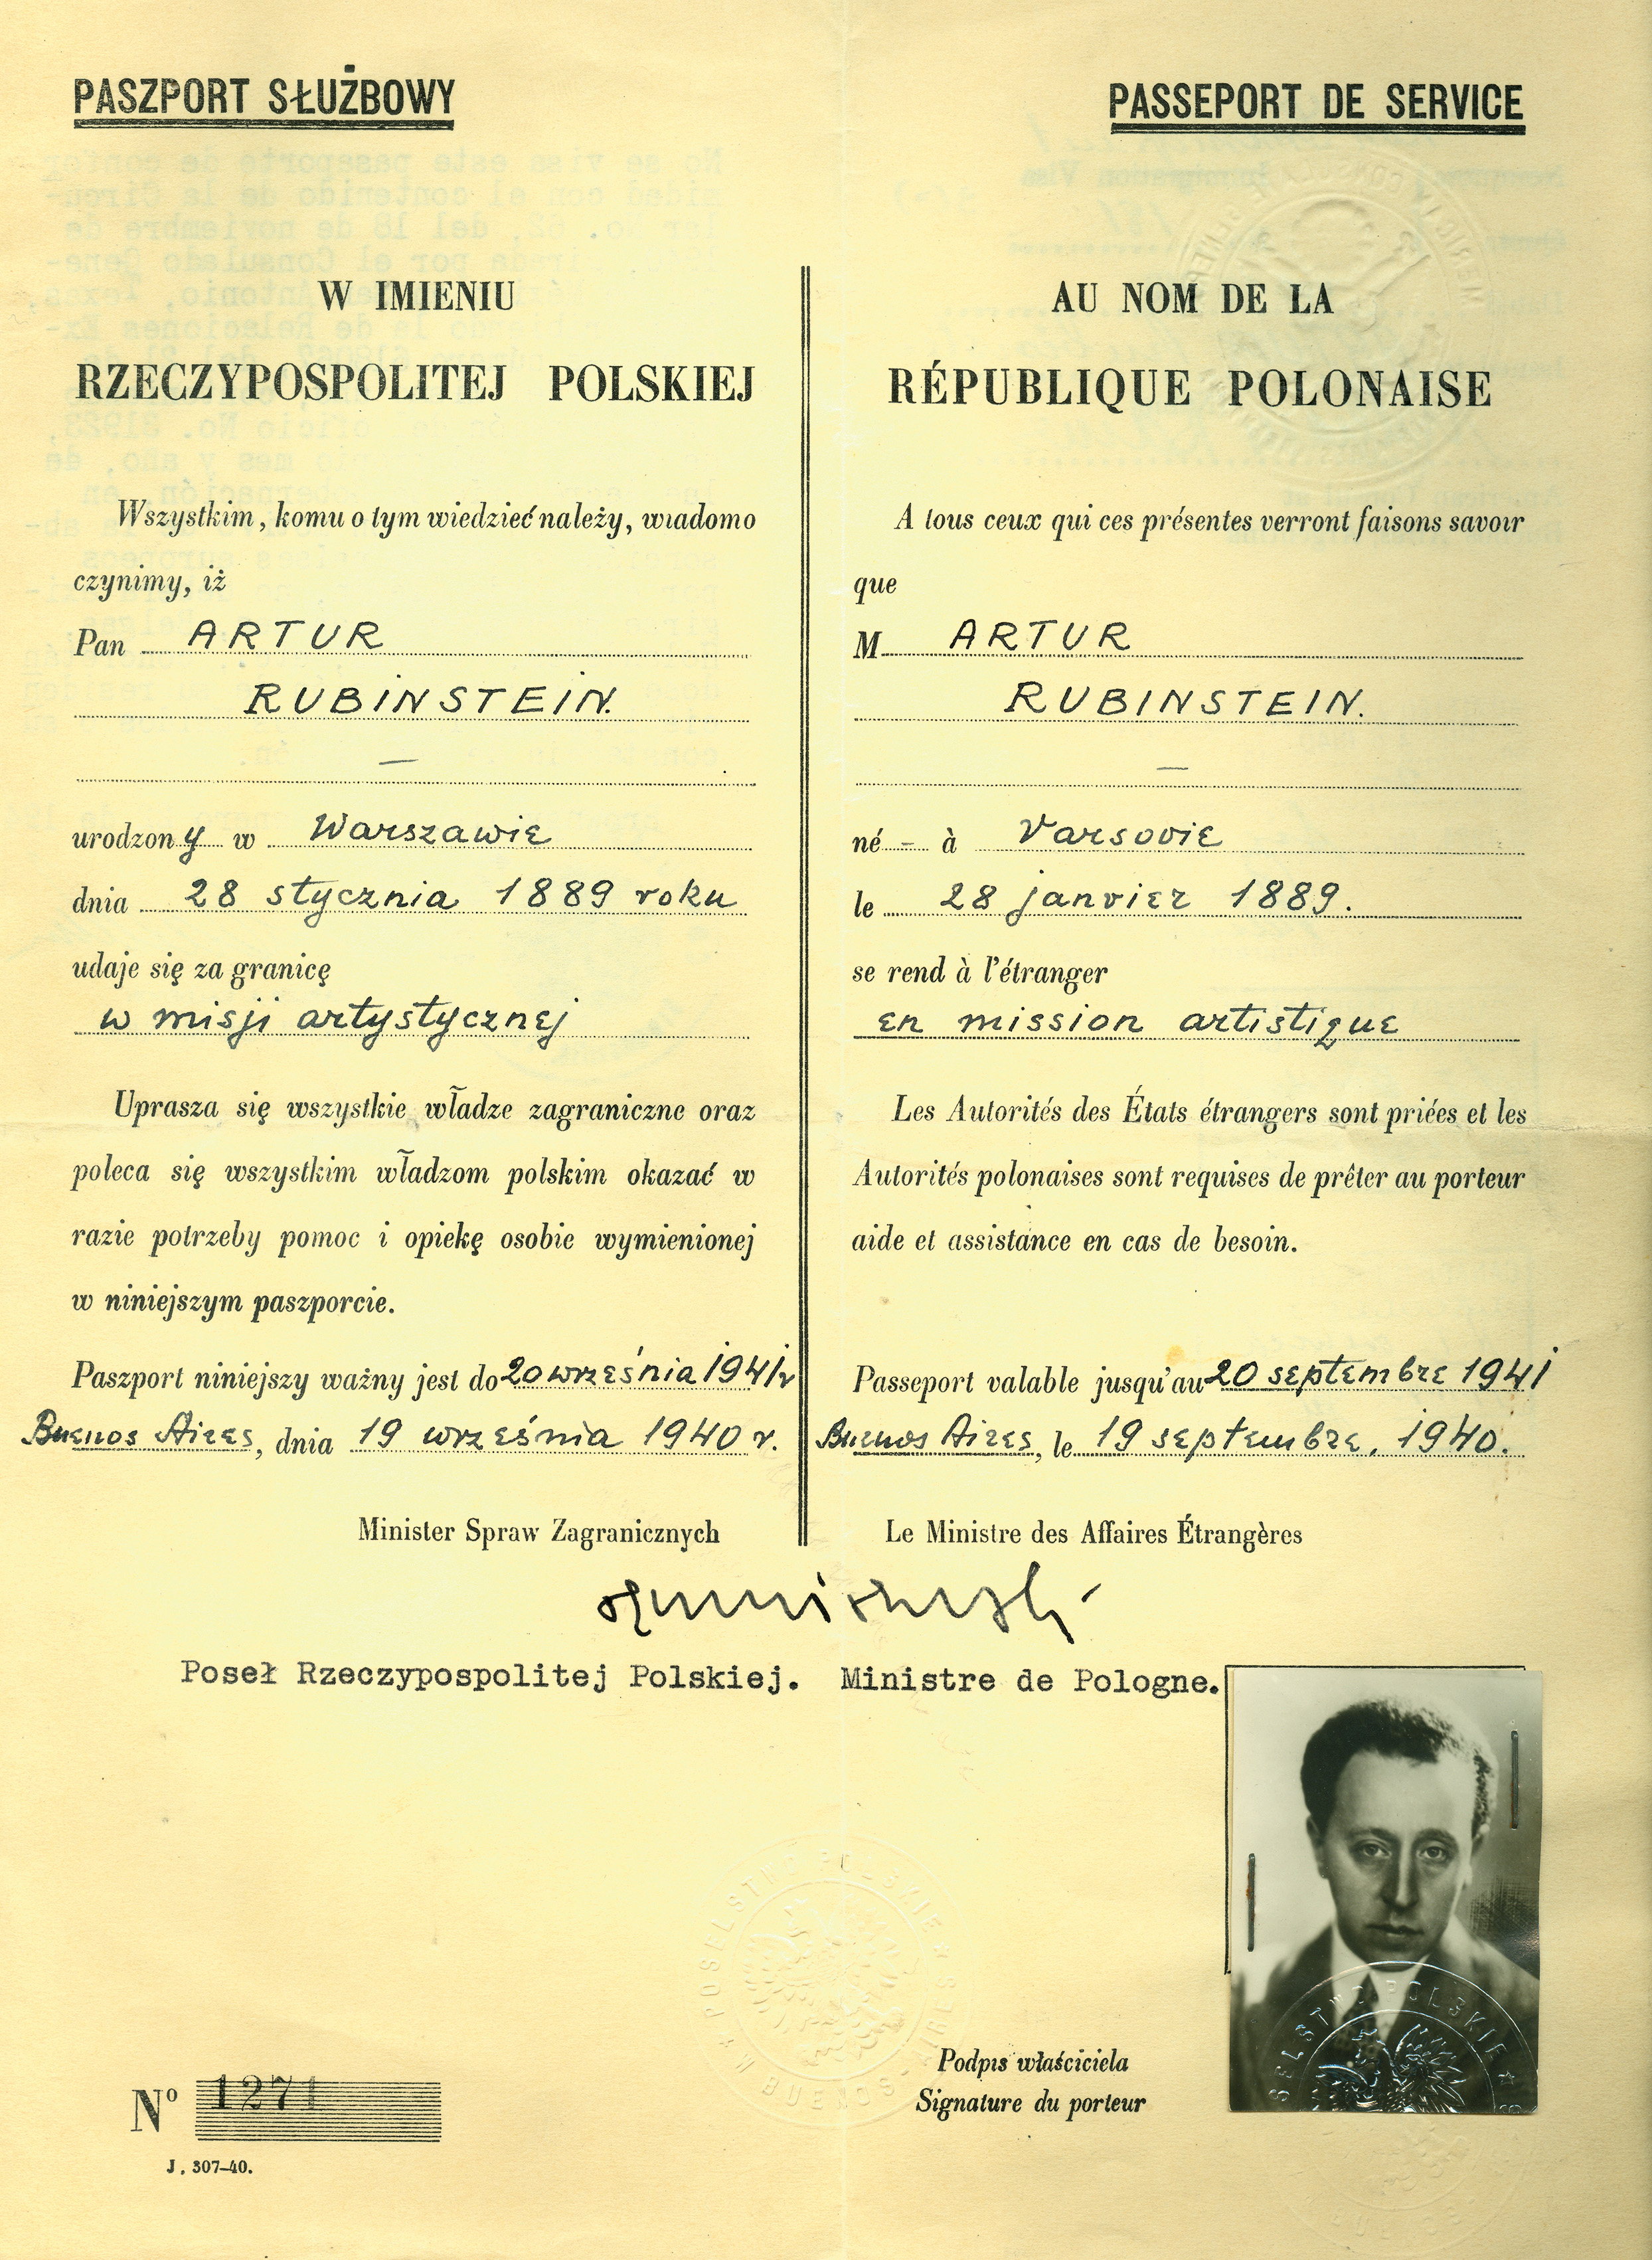 Artur Rubinstein’s foreign service passport